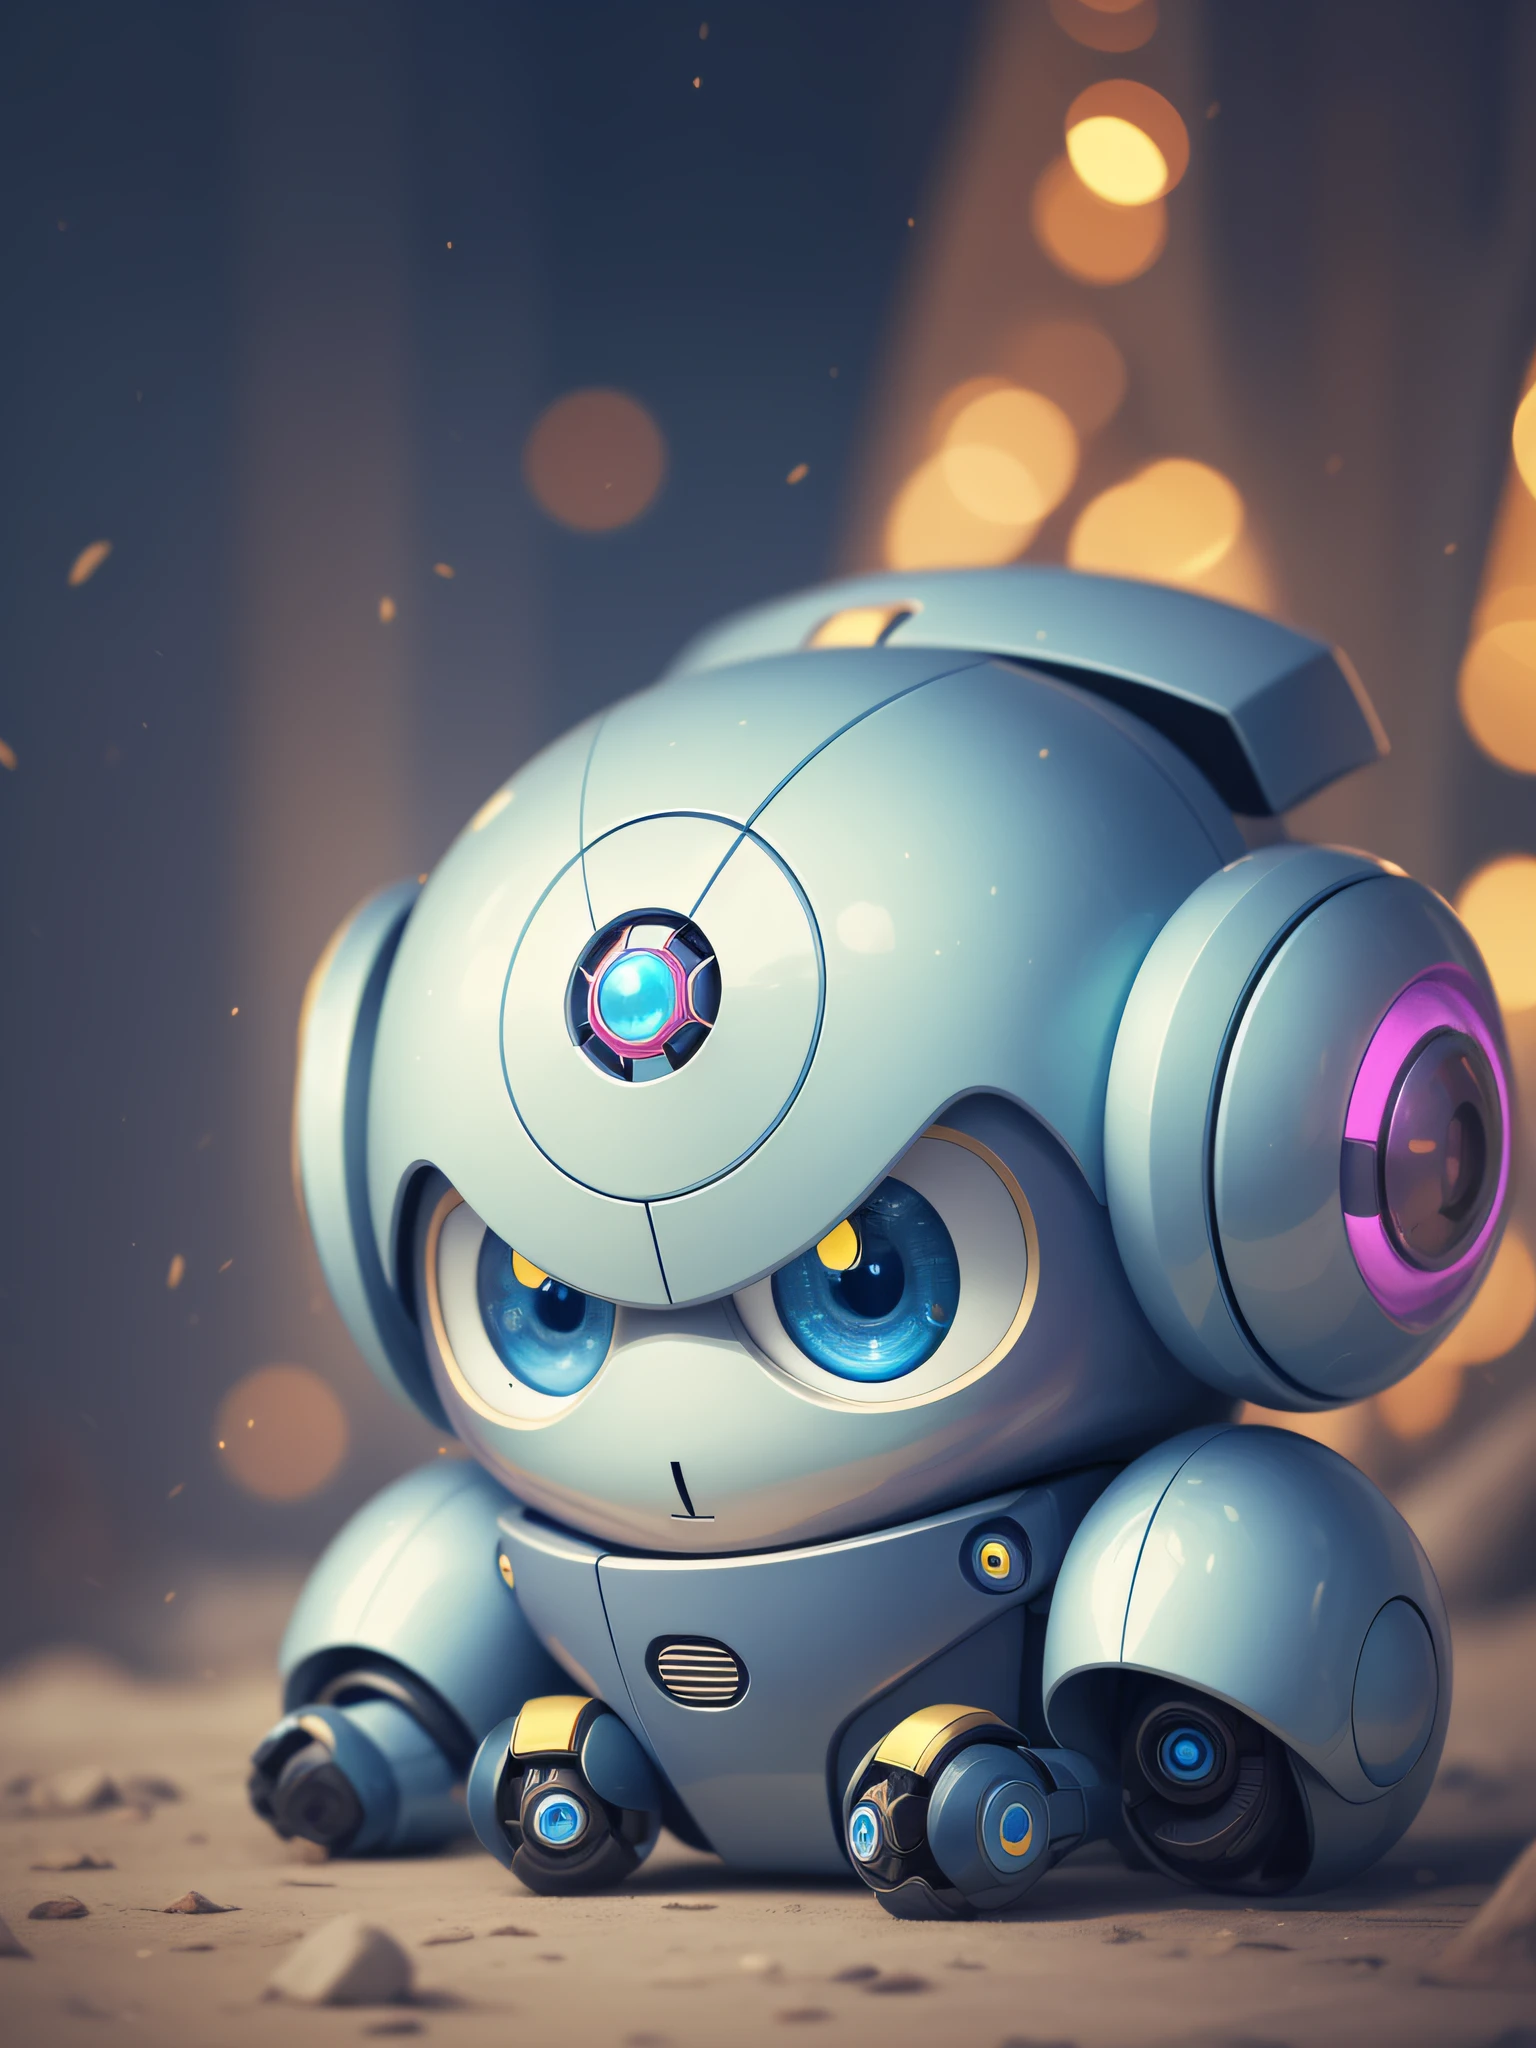 azul fofo bonito robô amarelo aiobras de arte adorável fofoadorável fofokawaii fantasiapersonagem fantasiacriatura robotização robotnik